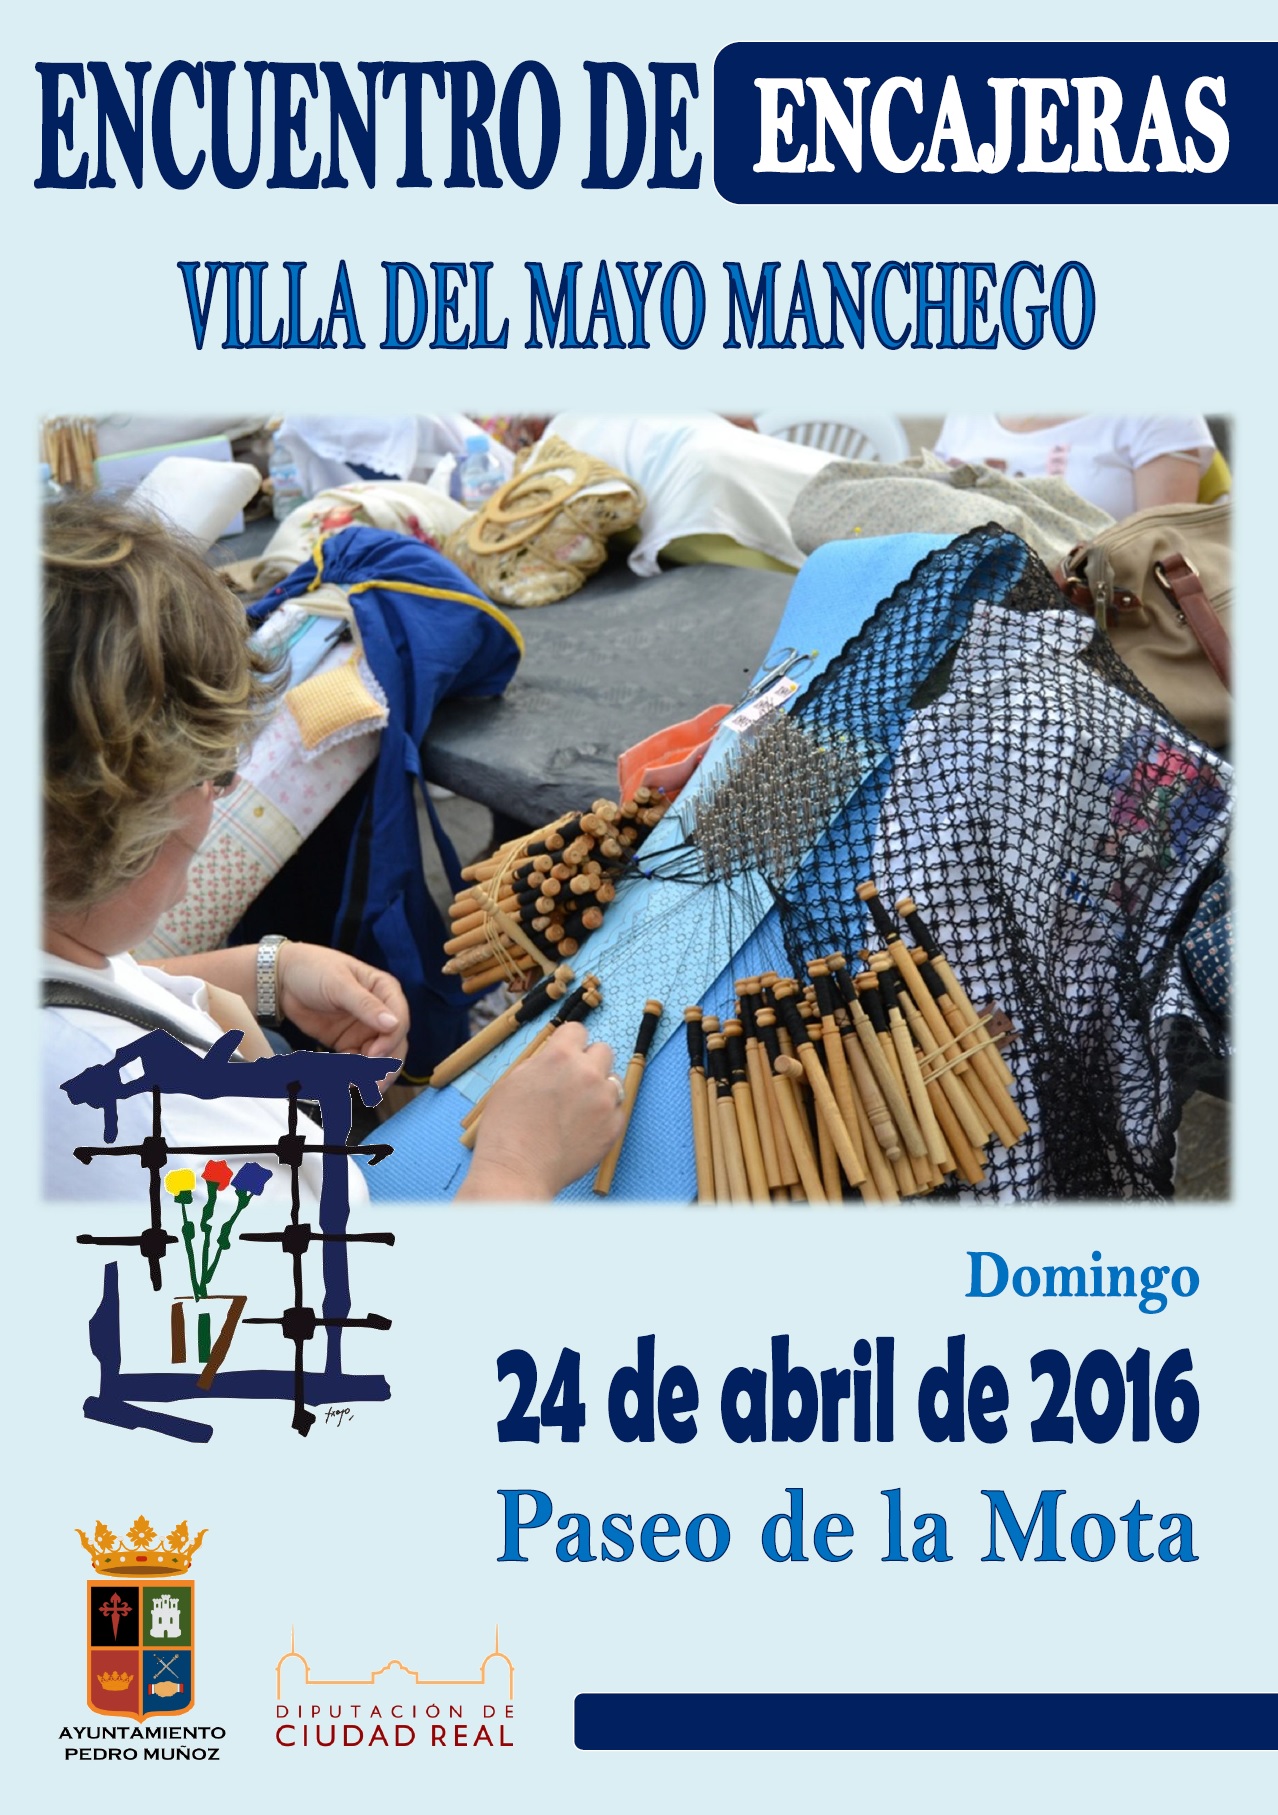 Pedro Muñoz celebrará la décima edición de su encuentro de encajeras "Villa del Mayo Manchego"